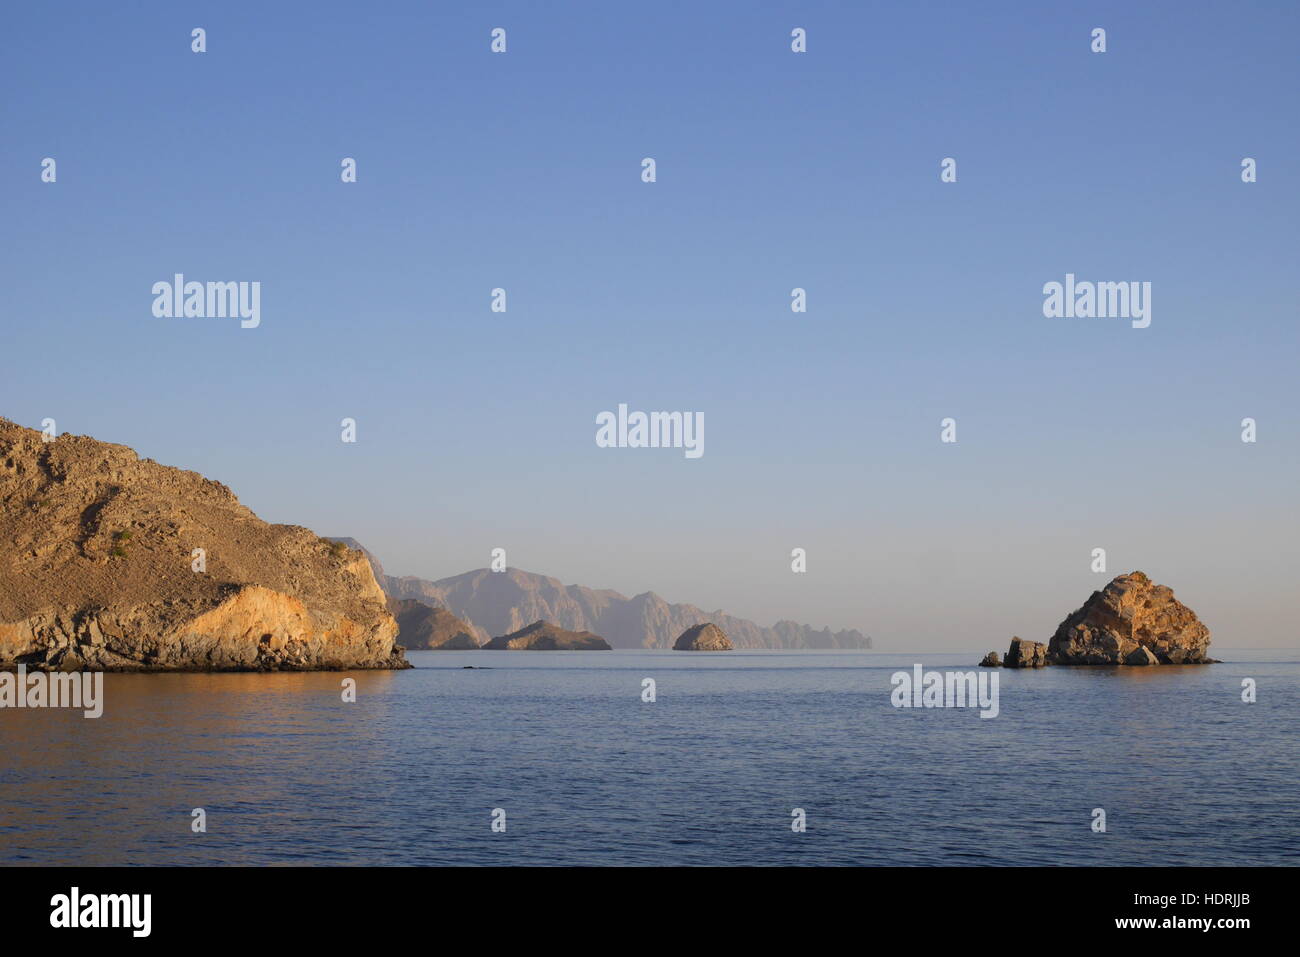 Felsige Küste und Inseln der Halbinsel Musandam, einer Enklave Omans Stockfoto